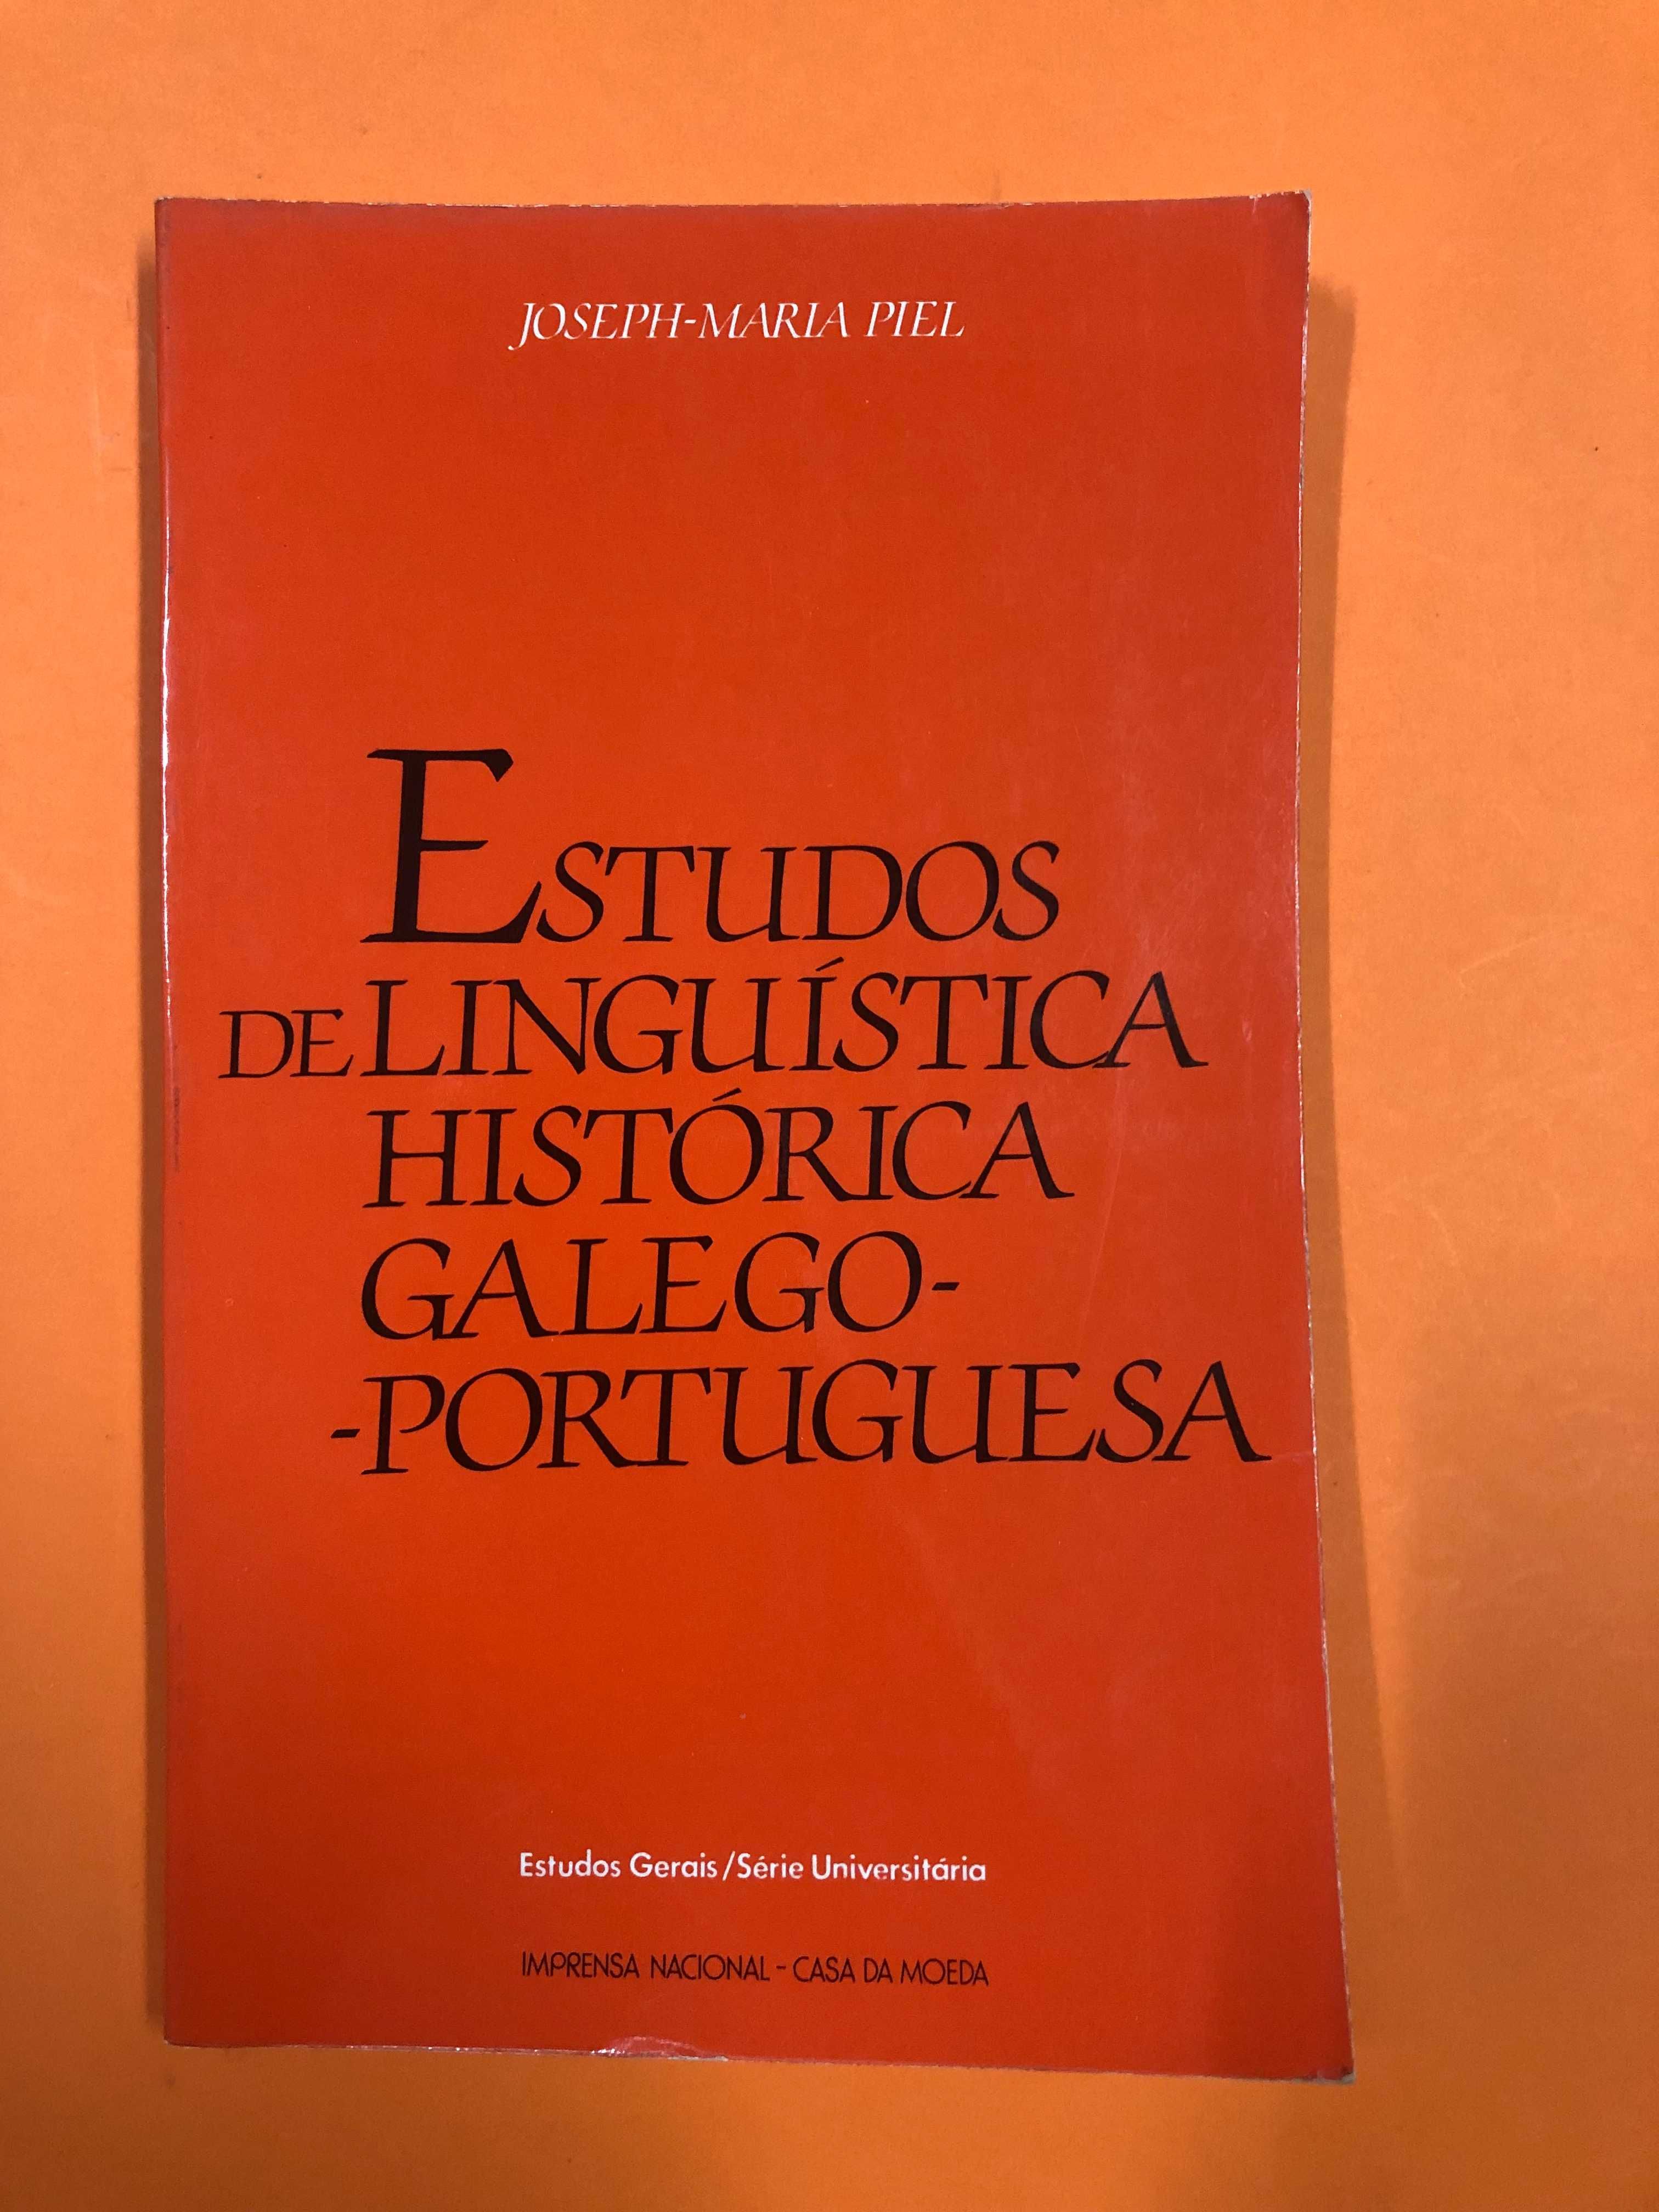 Estudos de Linguística Histórica Galego-Portuguesa - Joseph-Maria Piel